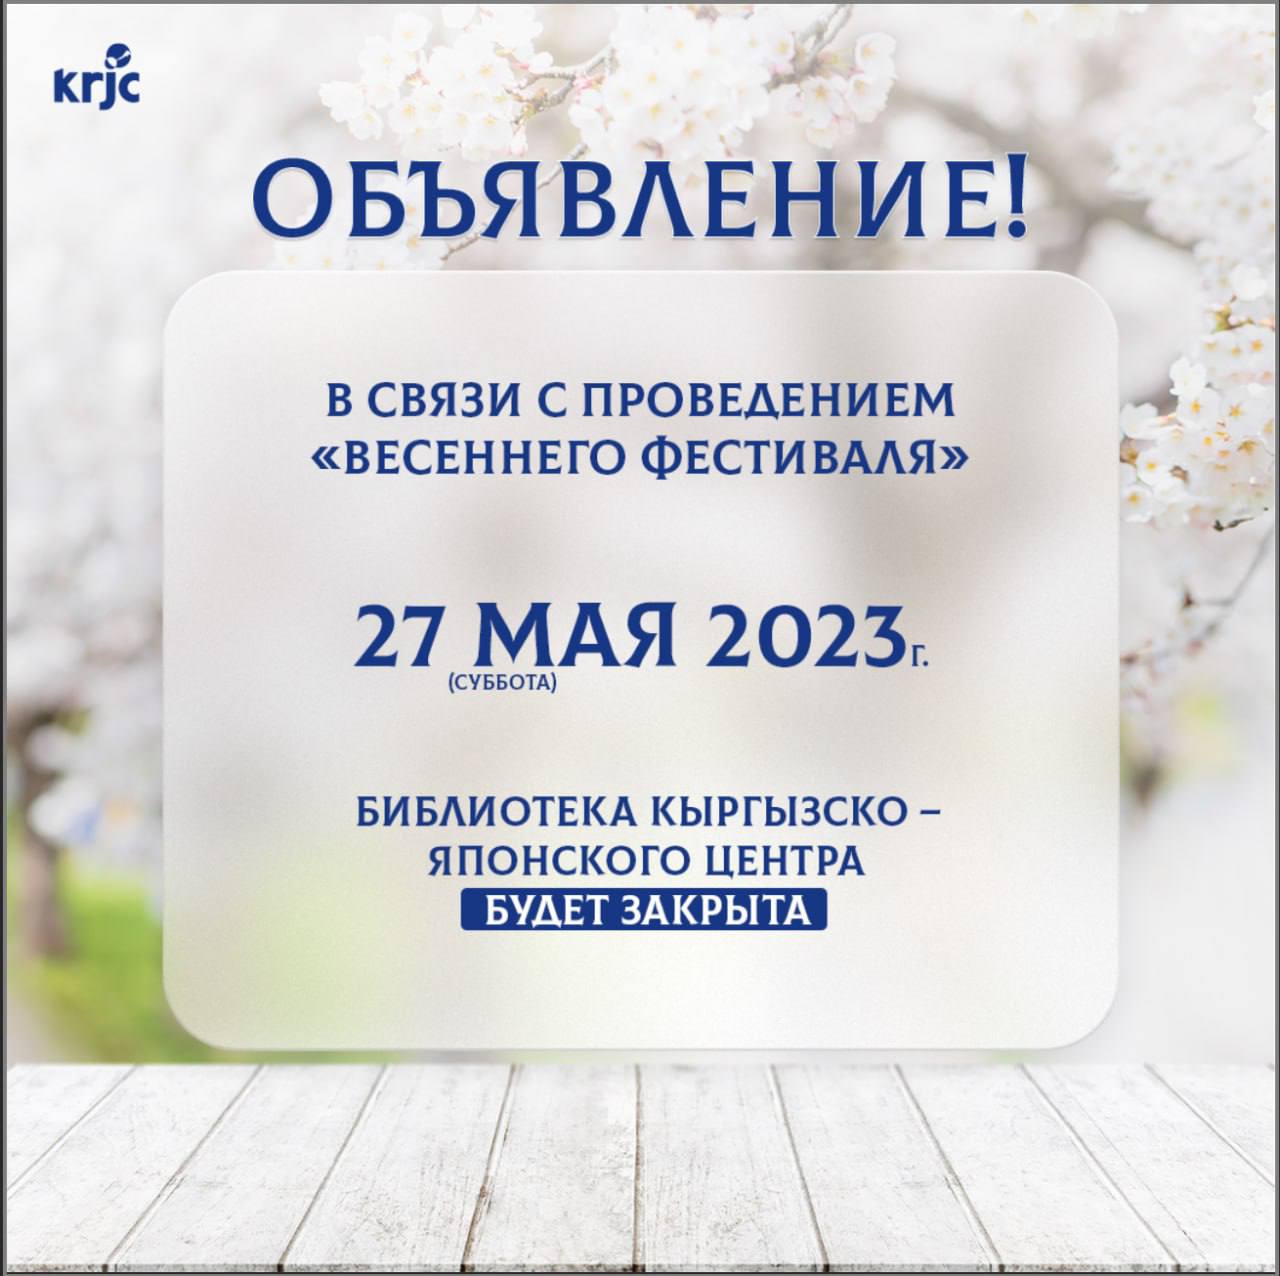 27 мая 2023 г. -  библиотека KRJC будет закрыта!